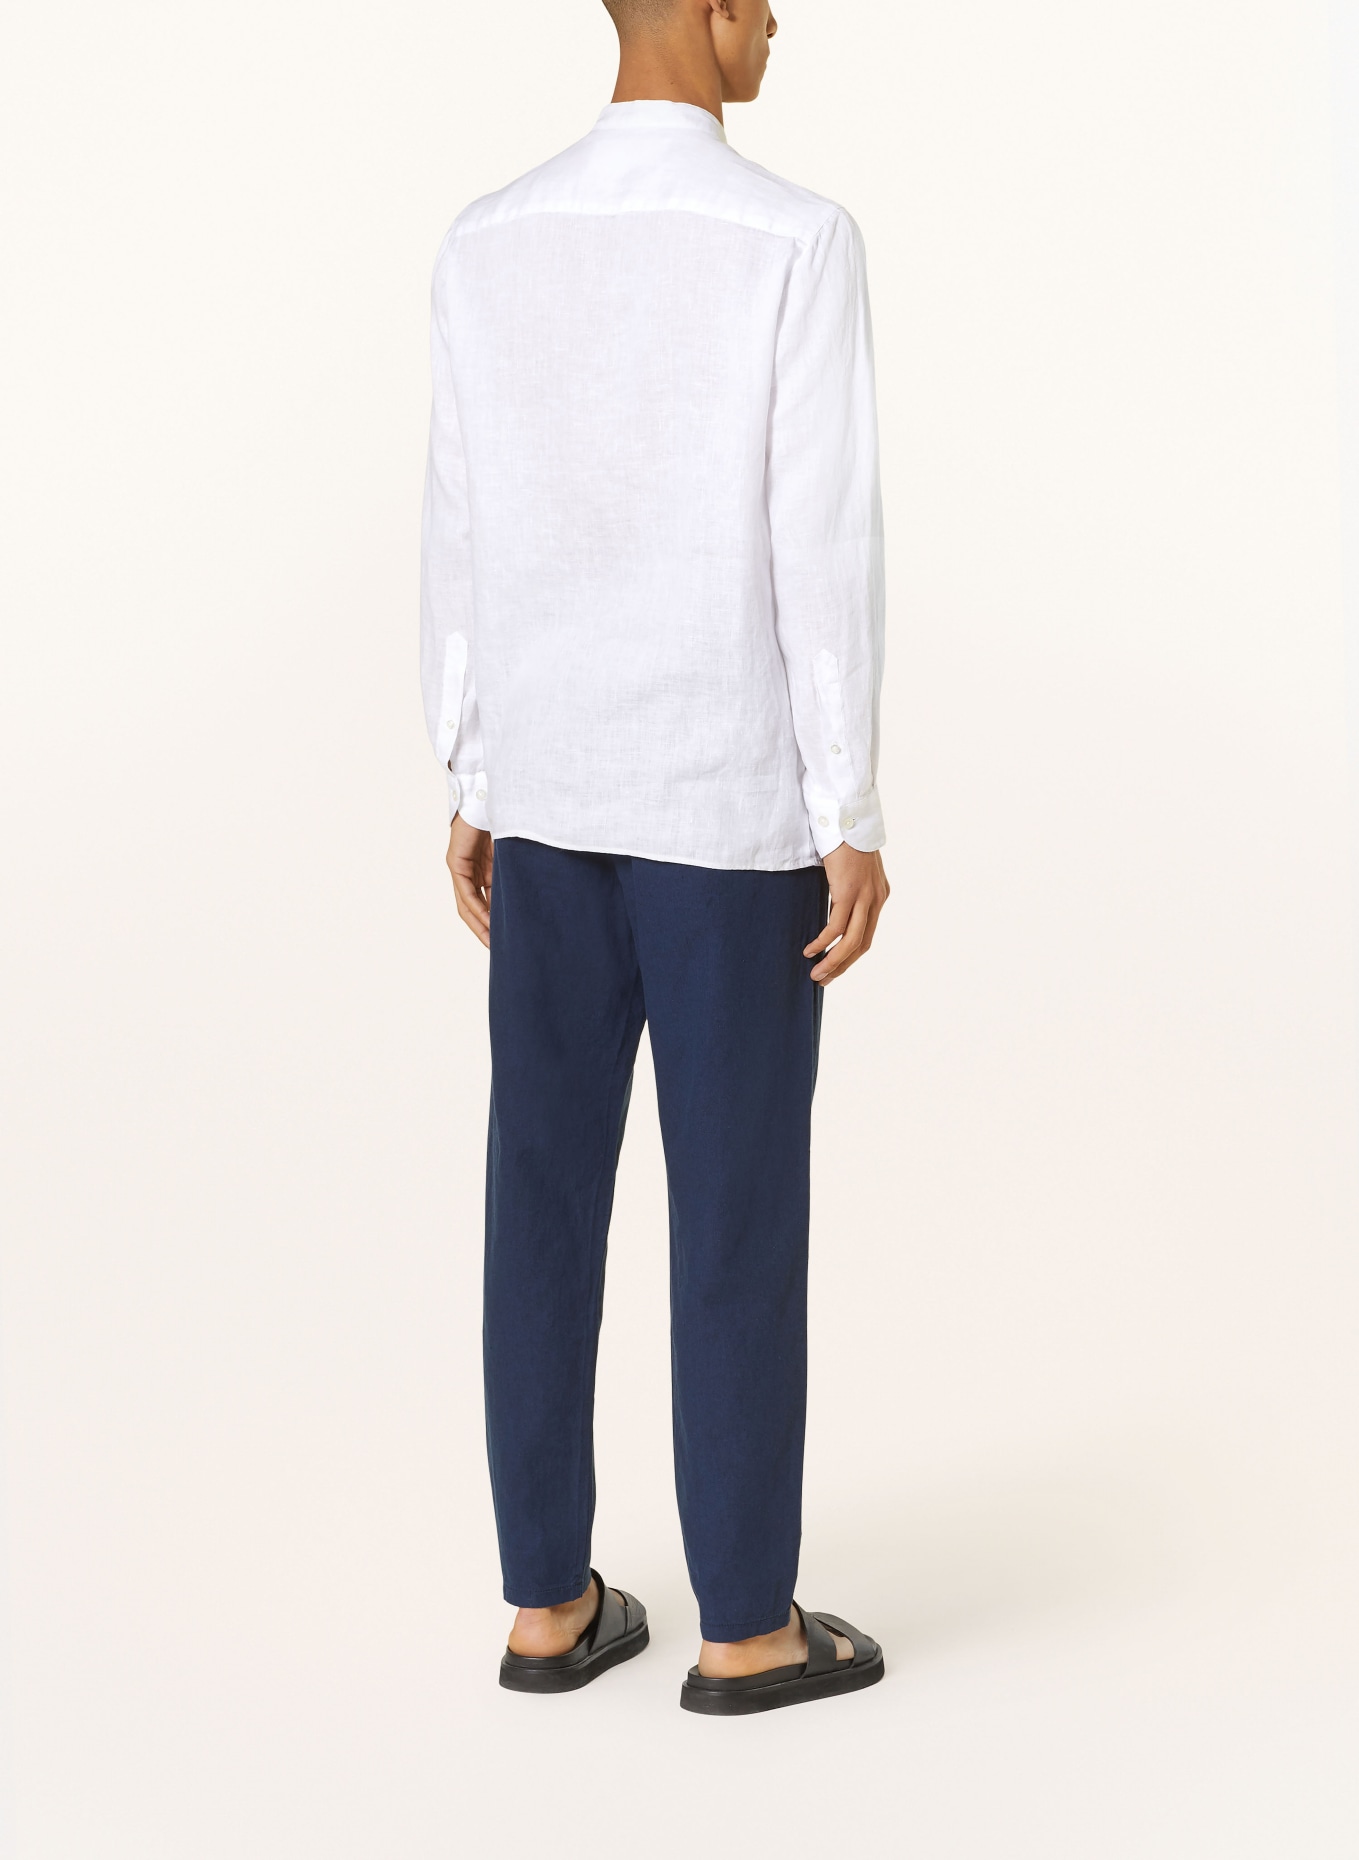 BALDESSARINI Leinenhemd Regular Fit mit Stehkragen, Farbe: WEISS (Bild 3)